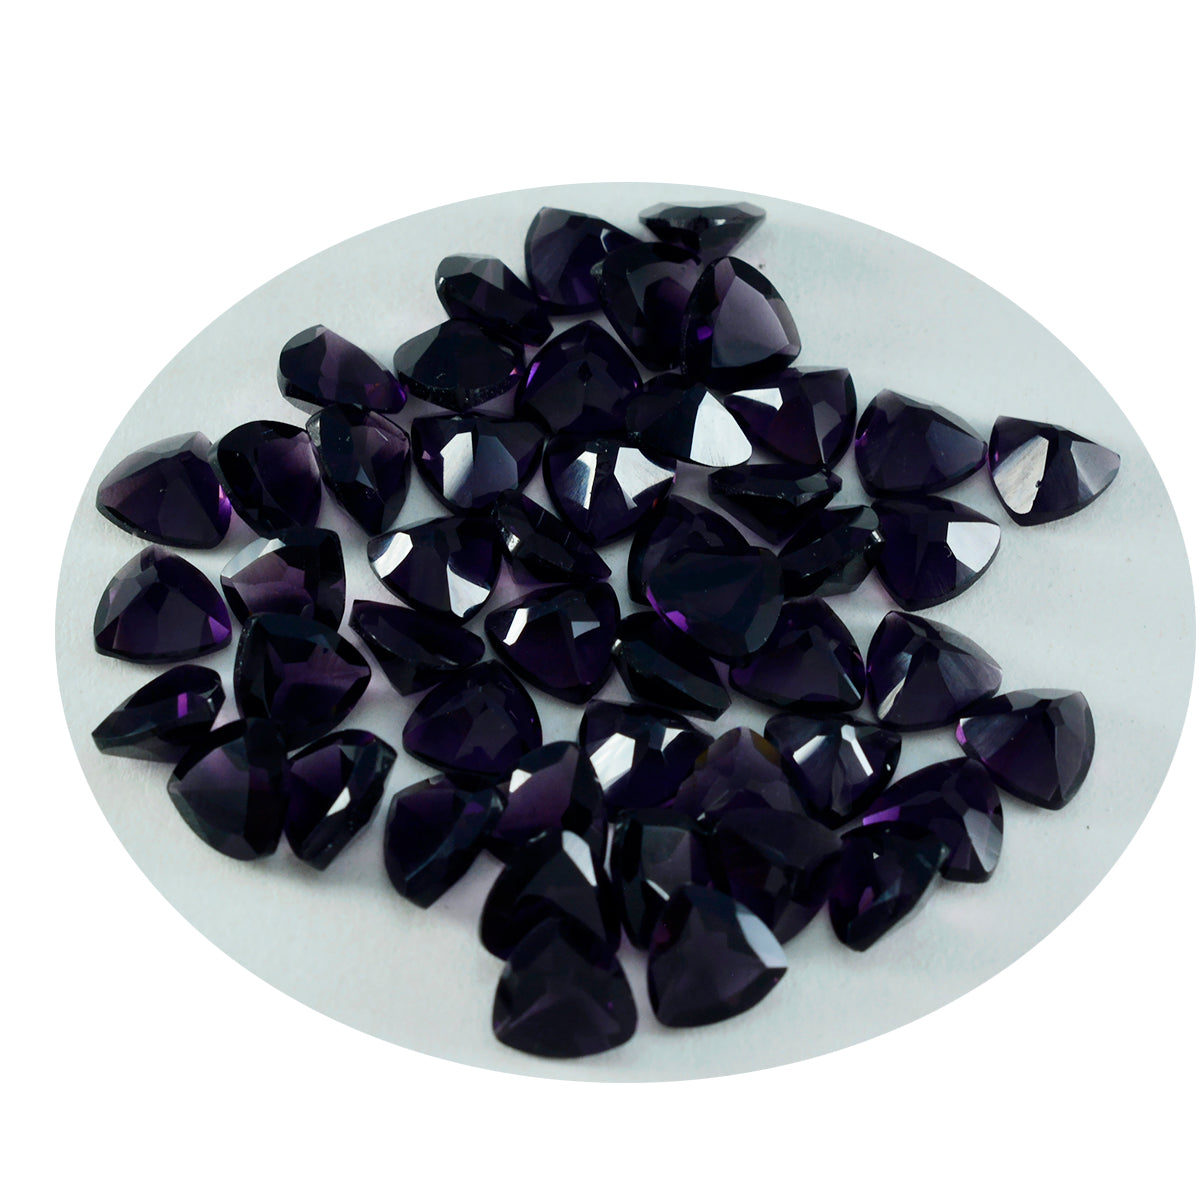 riyogems 1 шт. фиолетовый аметист cz граненый 8x8 мм форма триллиона красивое качество свободный драгоценный камень